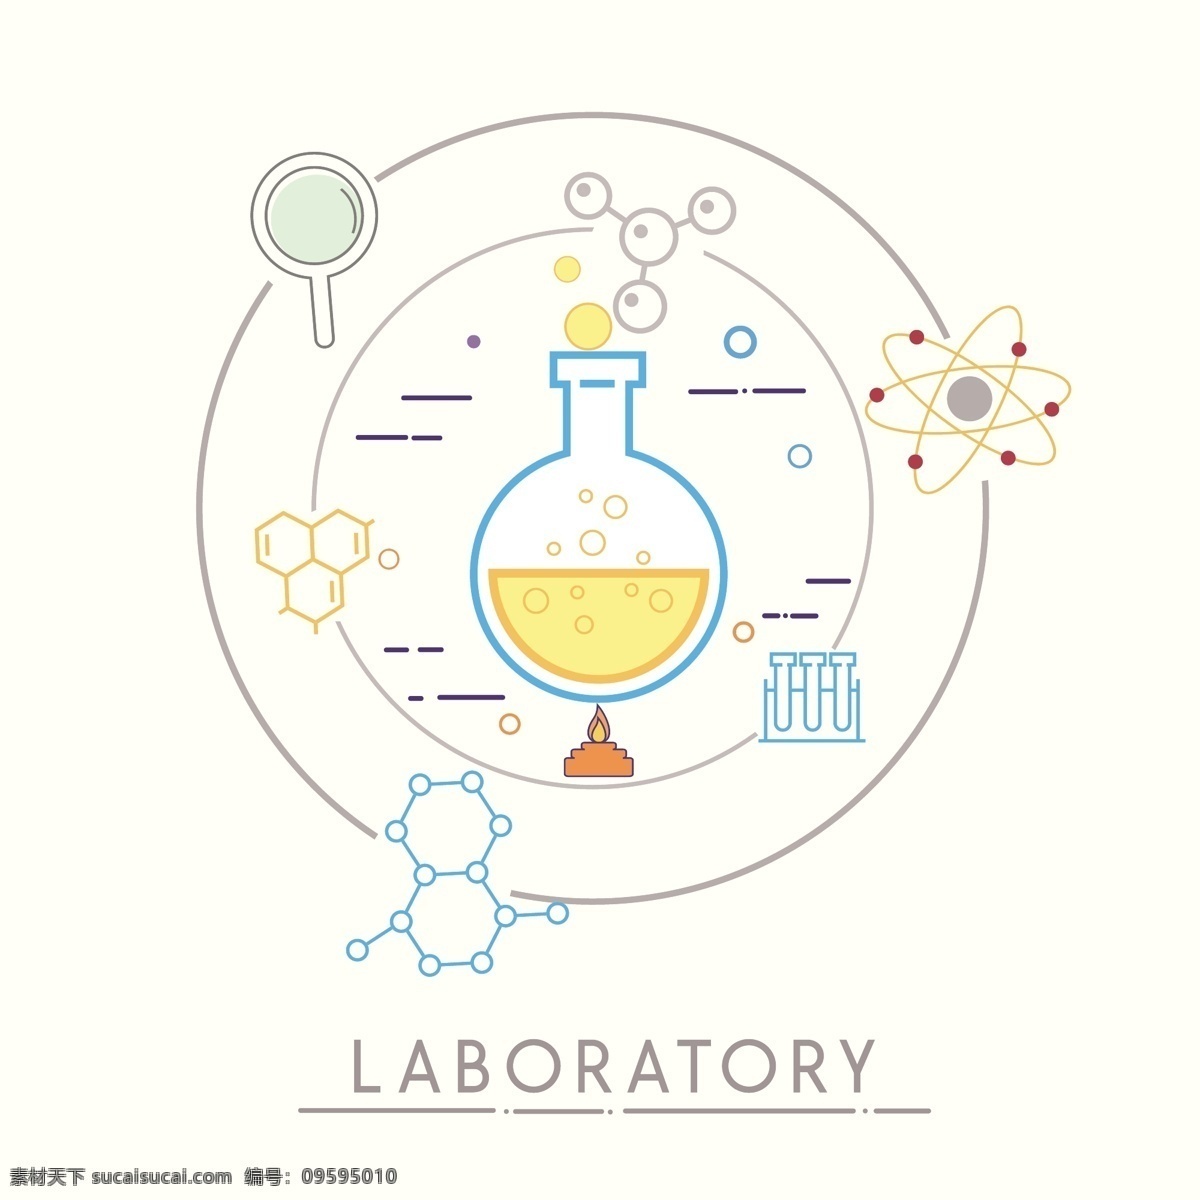 手绘 创意 化学 分子 背景 图 广告背景 广告 背景素材 底纹背景 化学分子 圆形 放大镜 实验